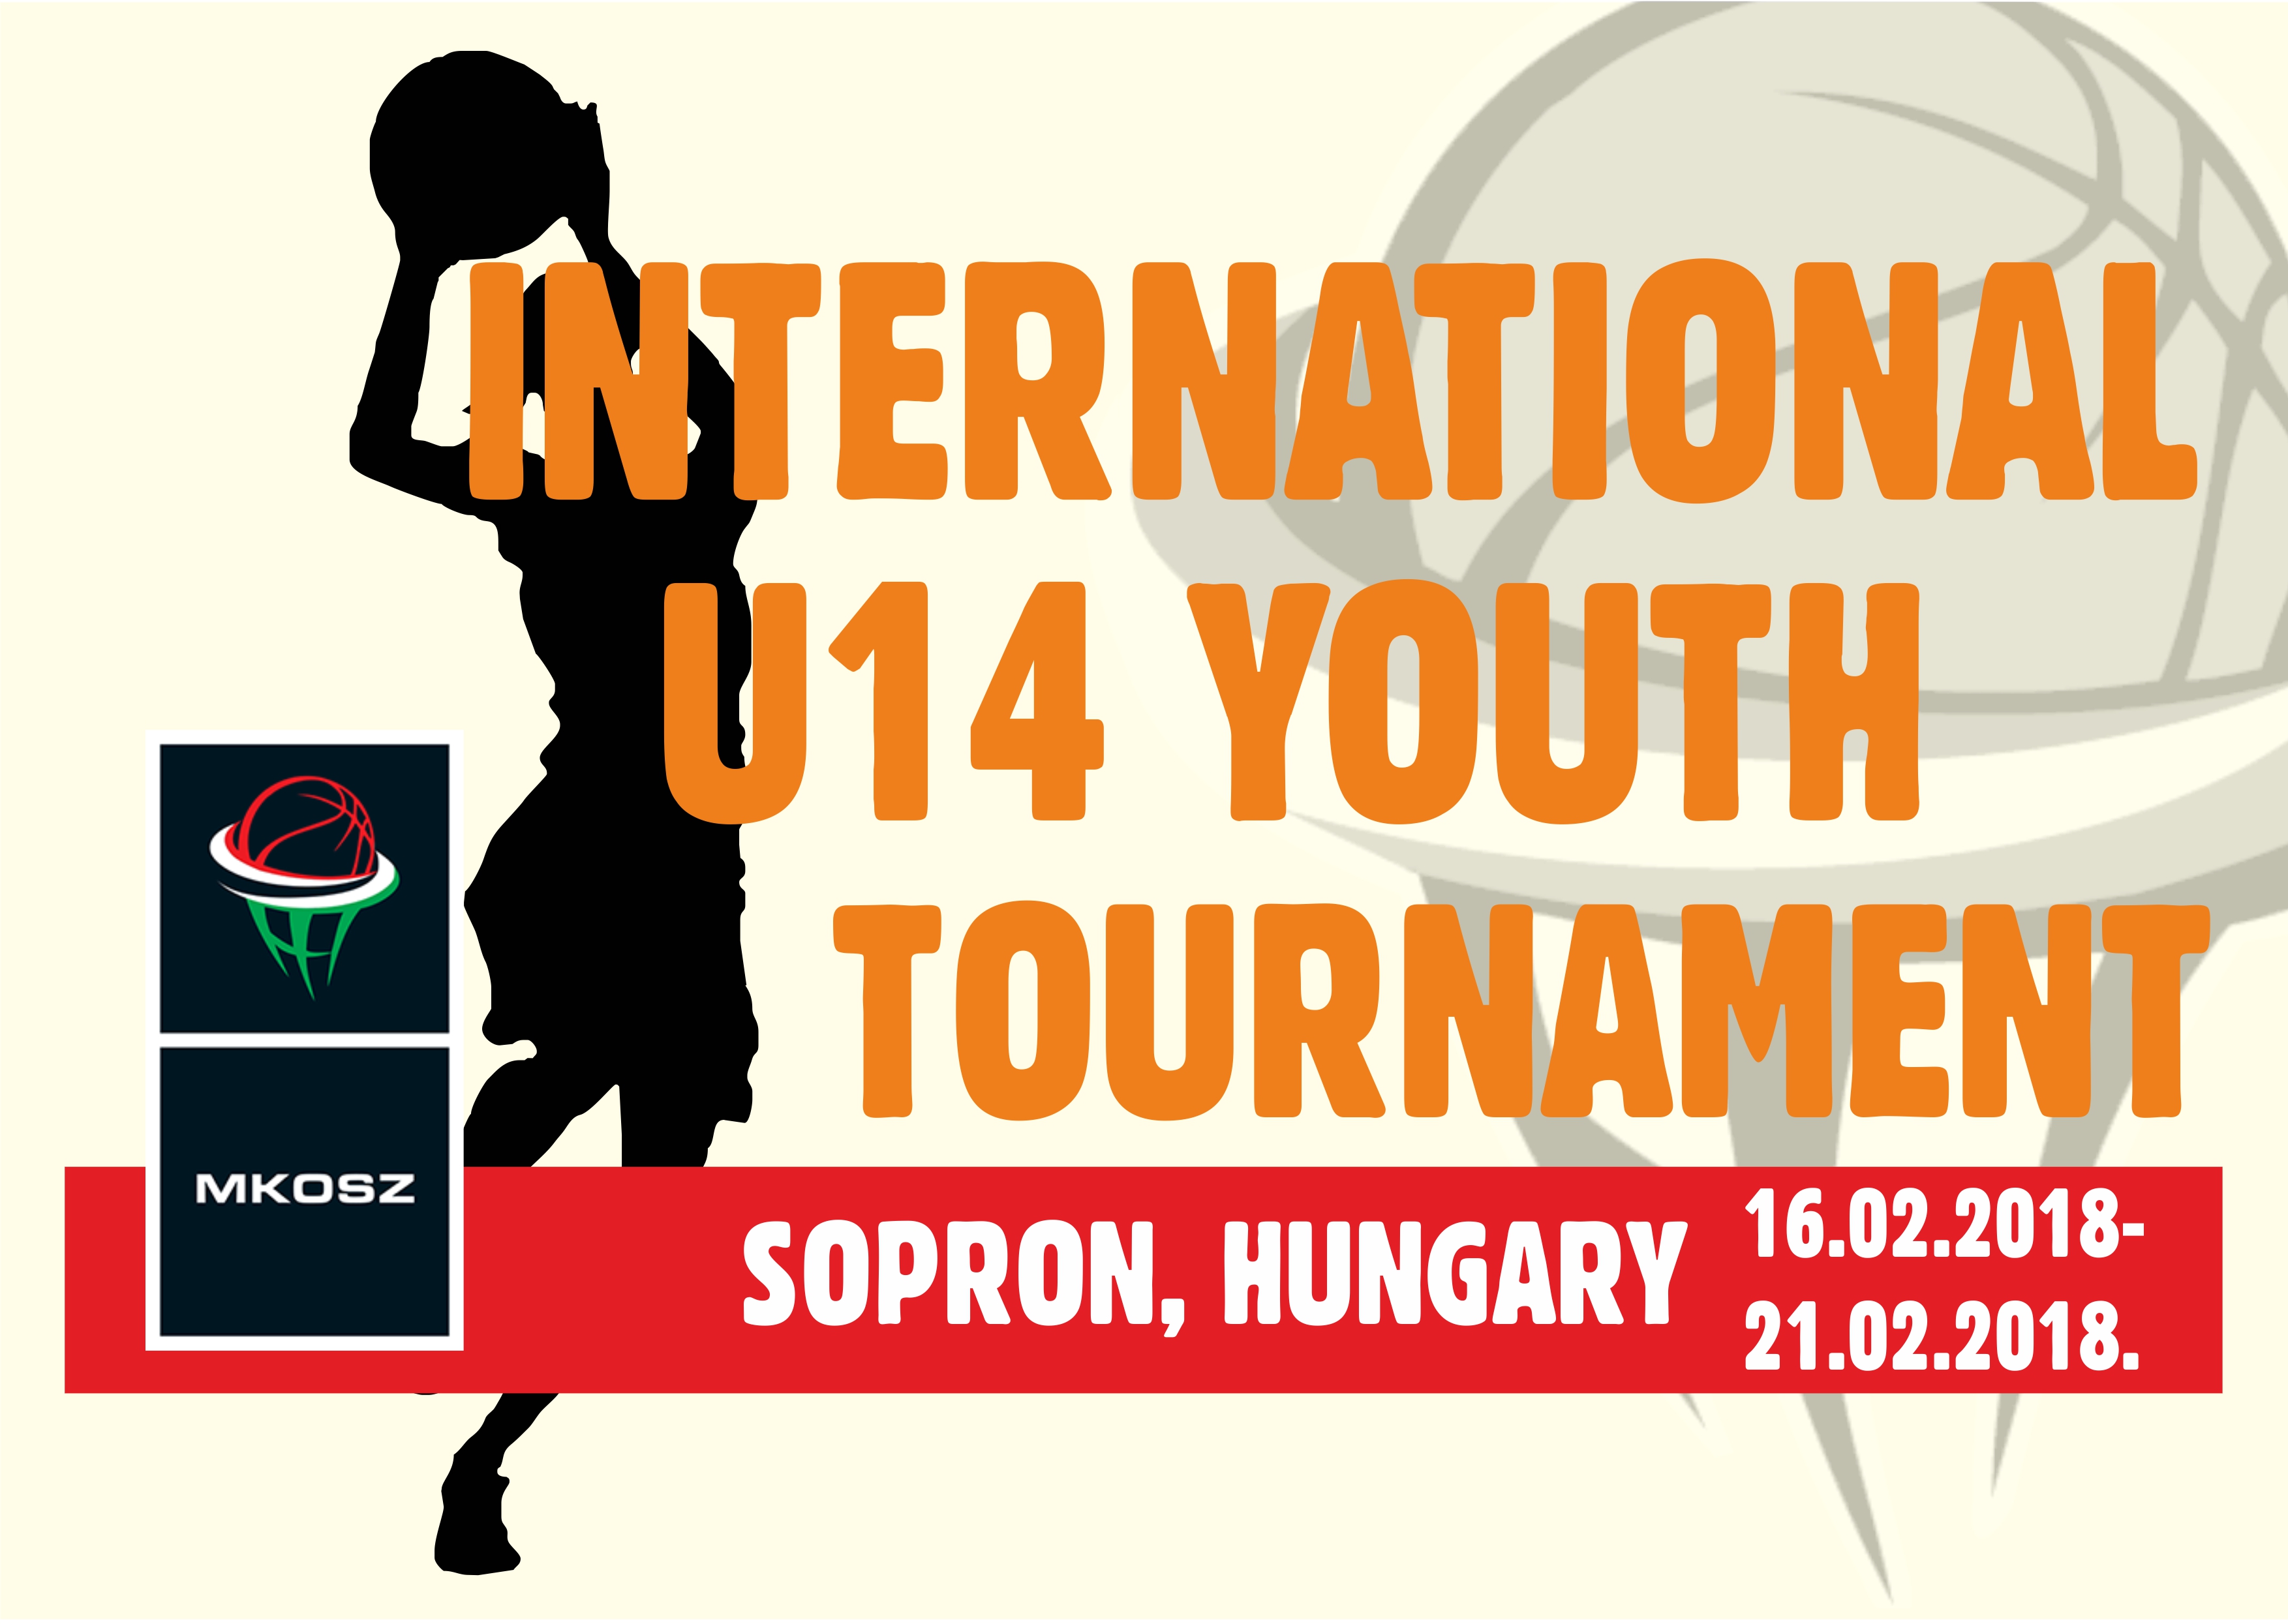 A Soproni Darazsak nemzetközi tornát rendez